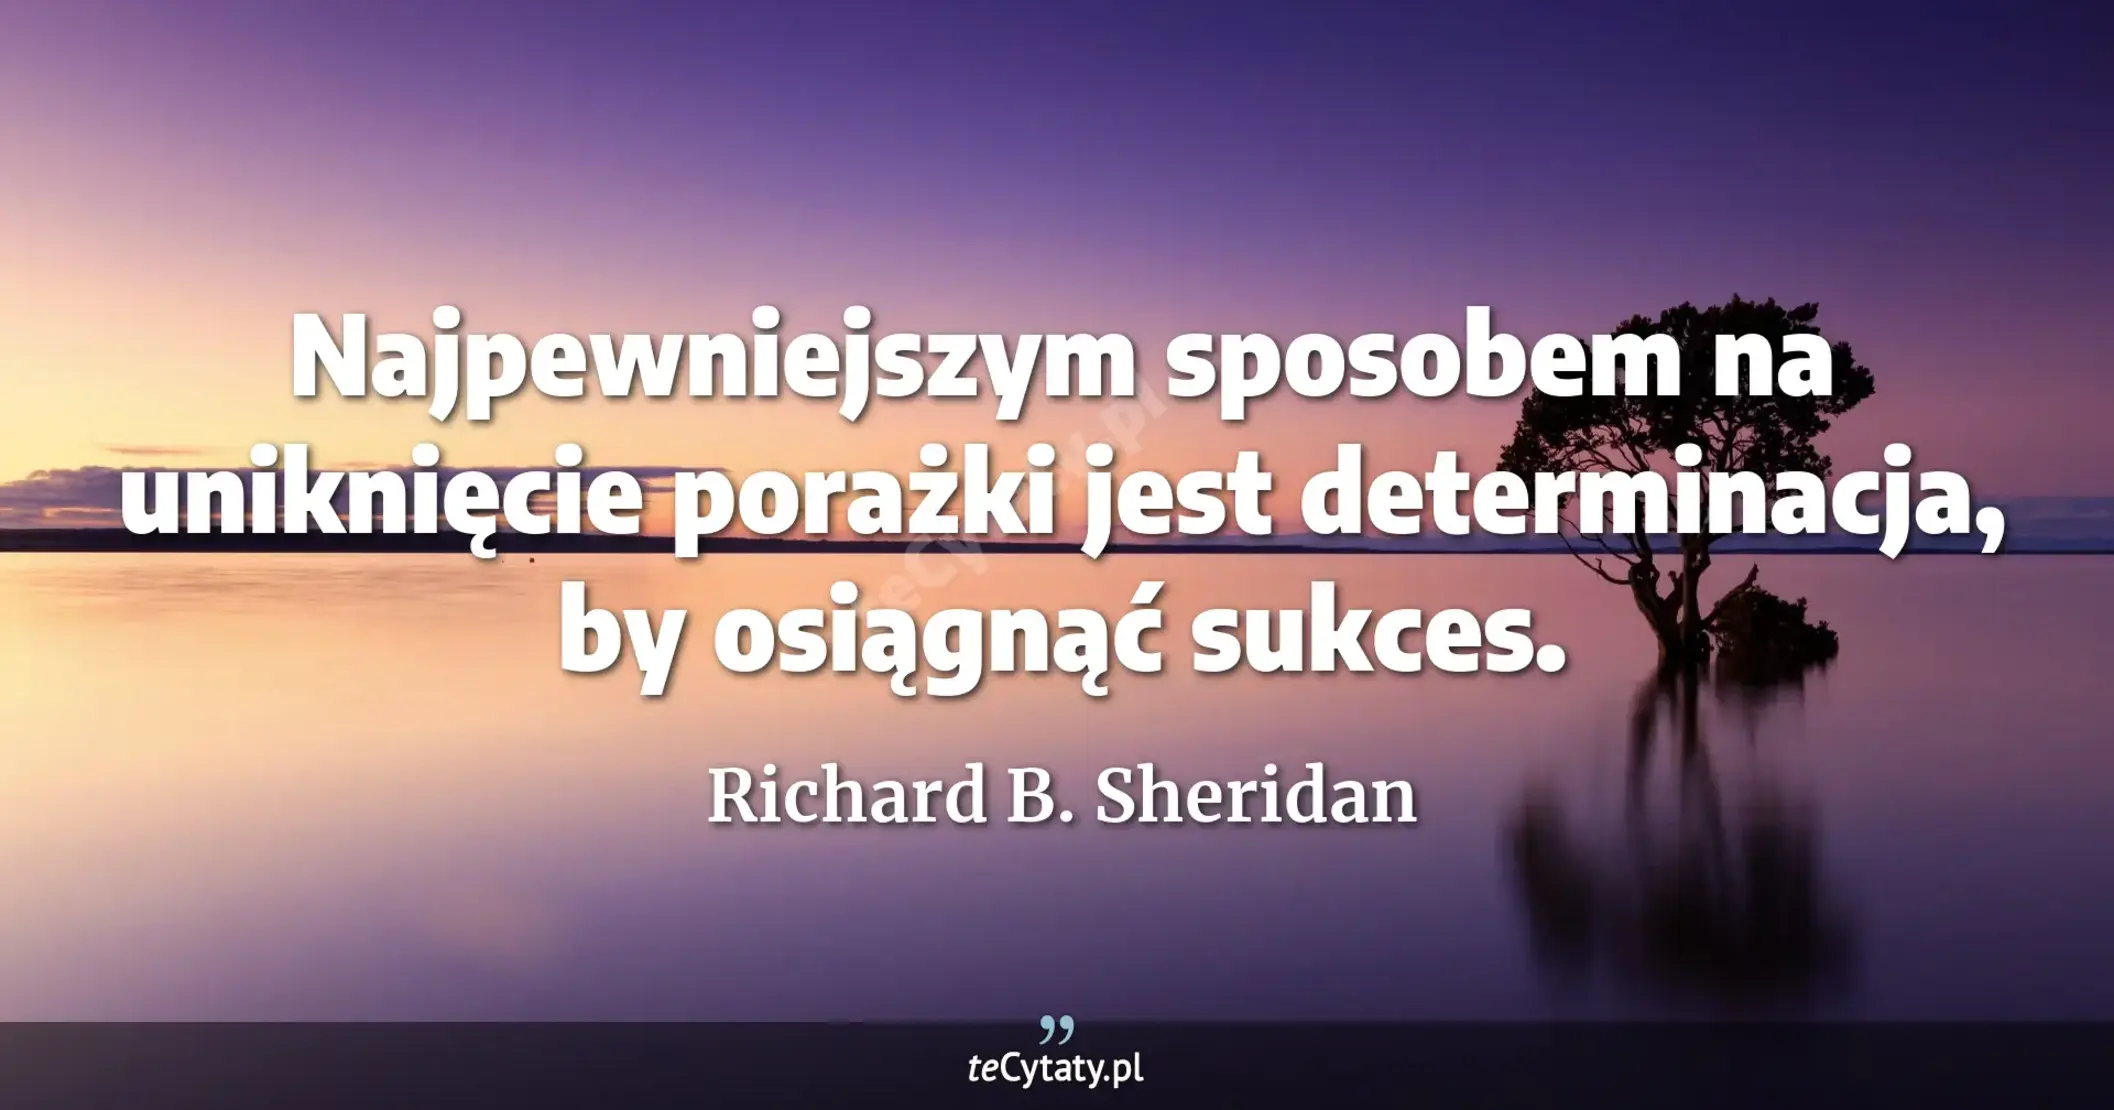 Najpewniejszym sposobem na uniknięcie porażki jest determinacja, by osiągnąć sukces. - Richard B. Sheridan